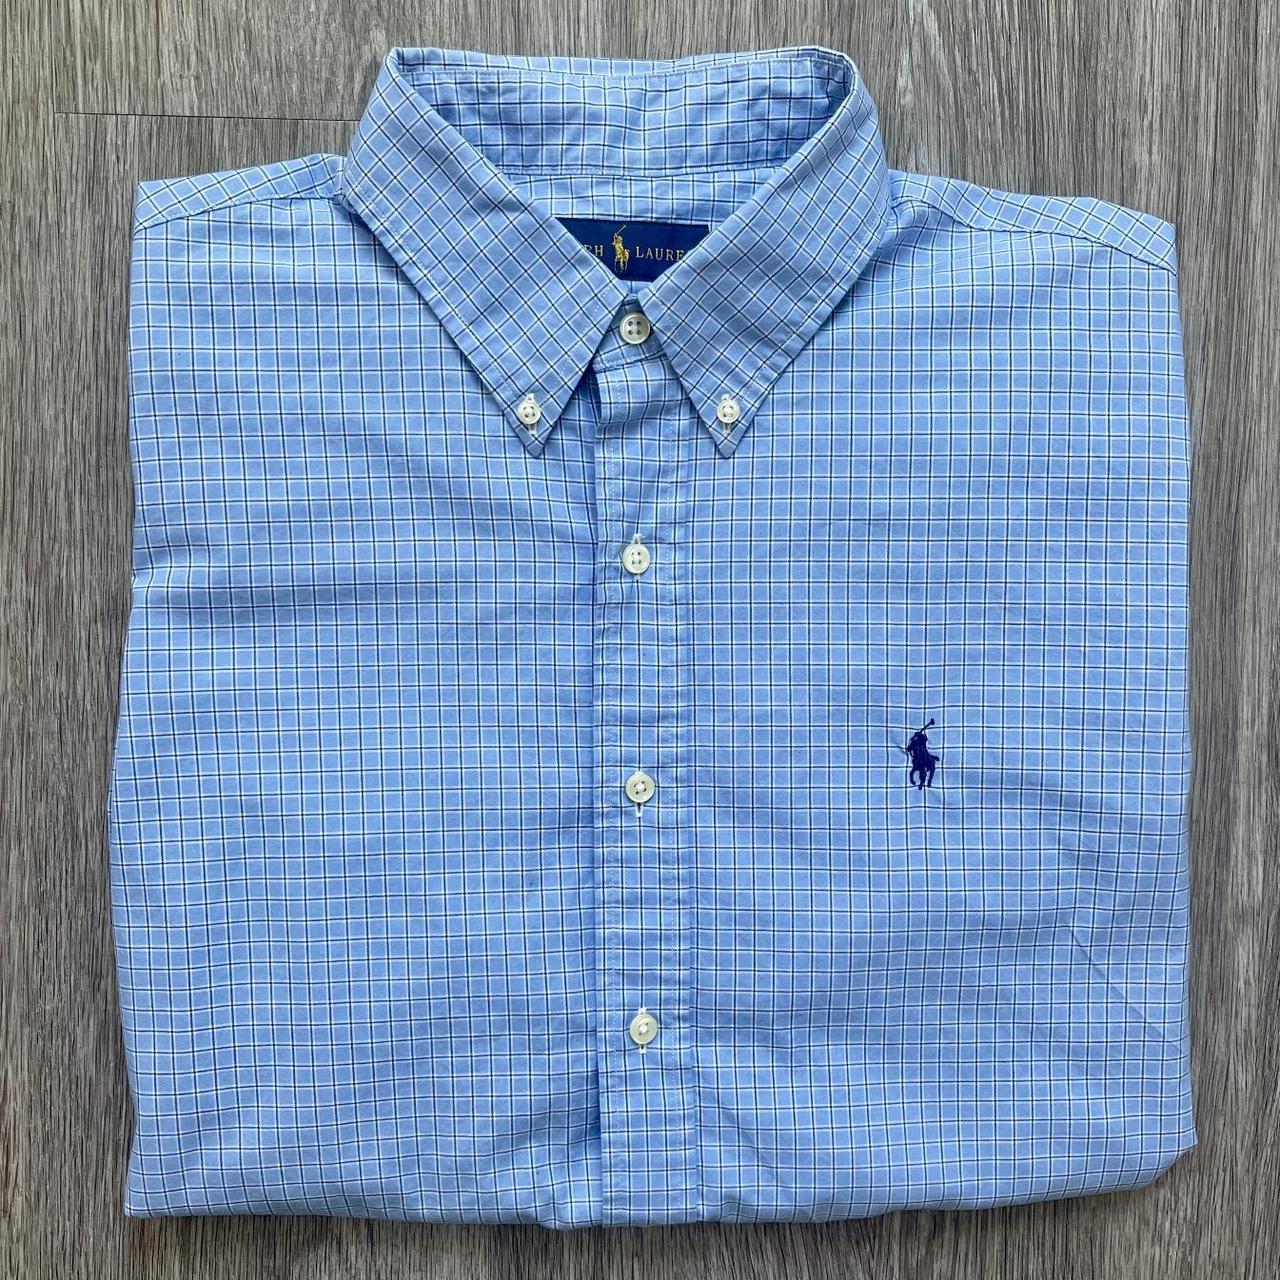 Polo by Ralph Lauren Shirt Long Sleeve Mens Small... - Depop